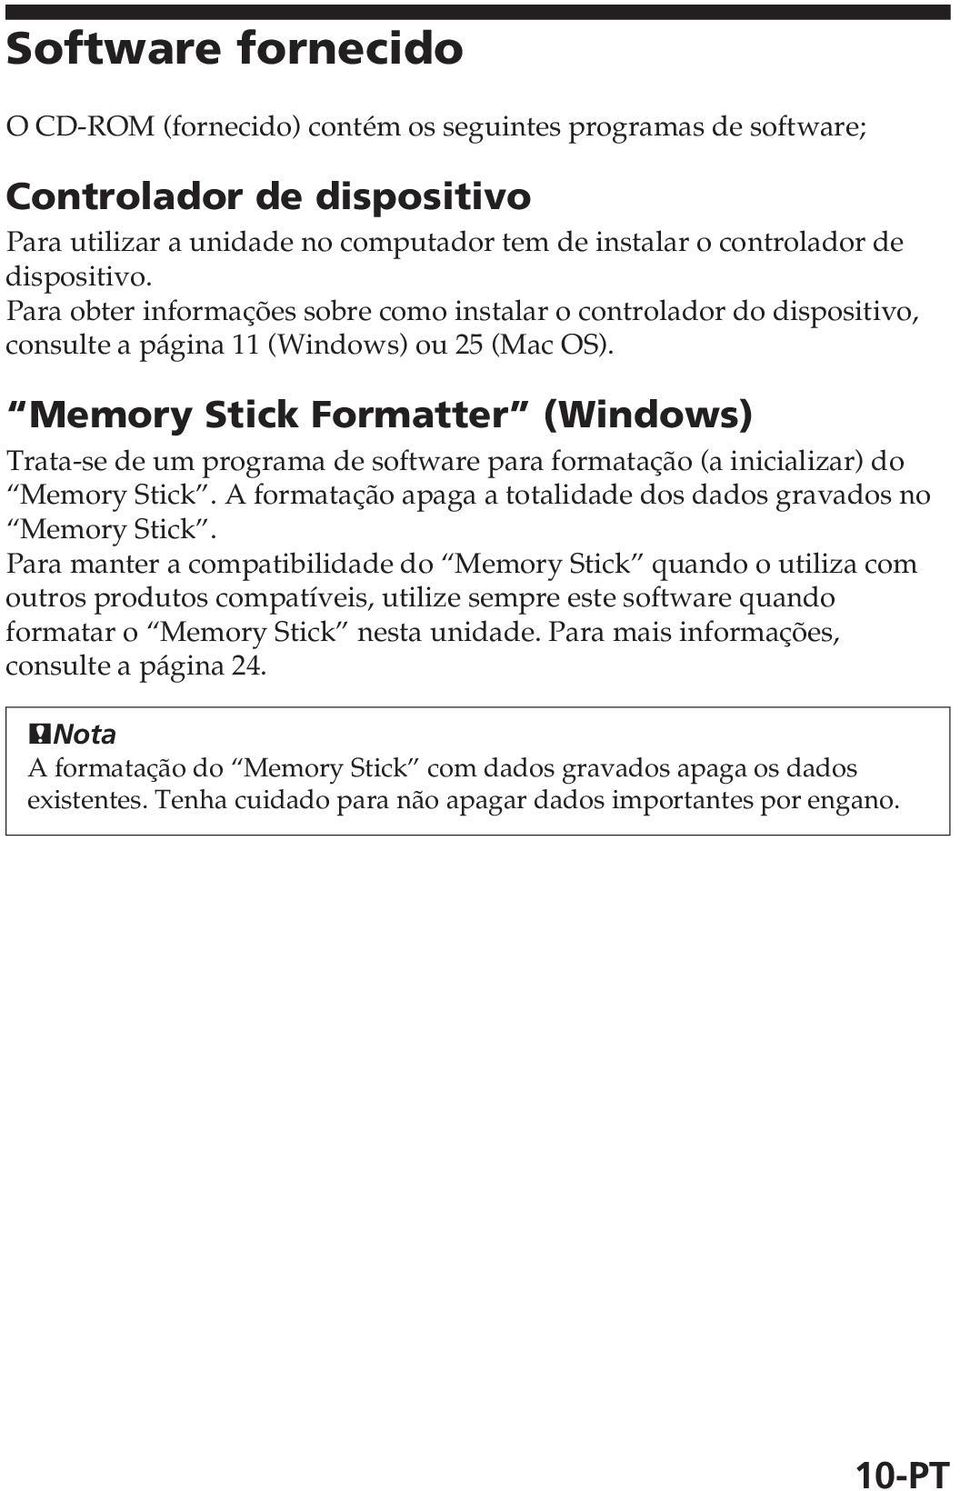 Memory Stick Formatter (Windows) Trata-se de um programa de software para formatação (a inicializar) do Memory Stick. A formatação apaga a totalidade dos dados gravados no Memory Stick.